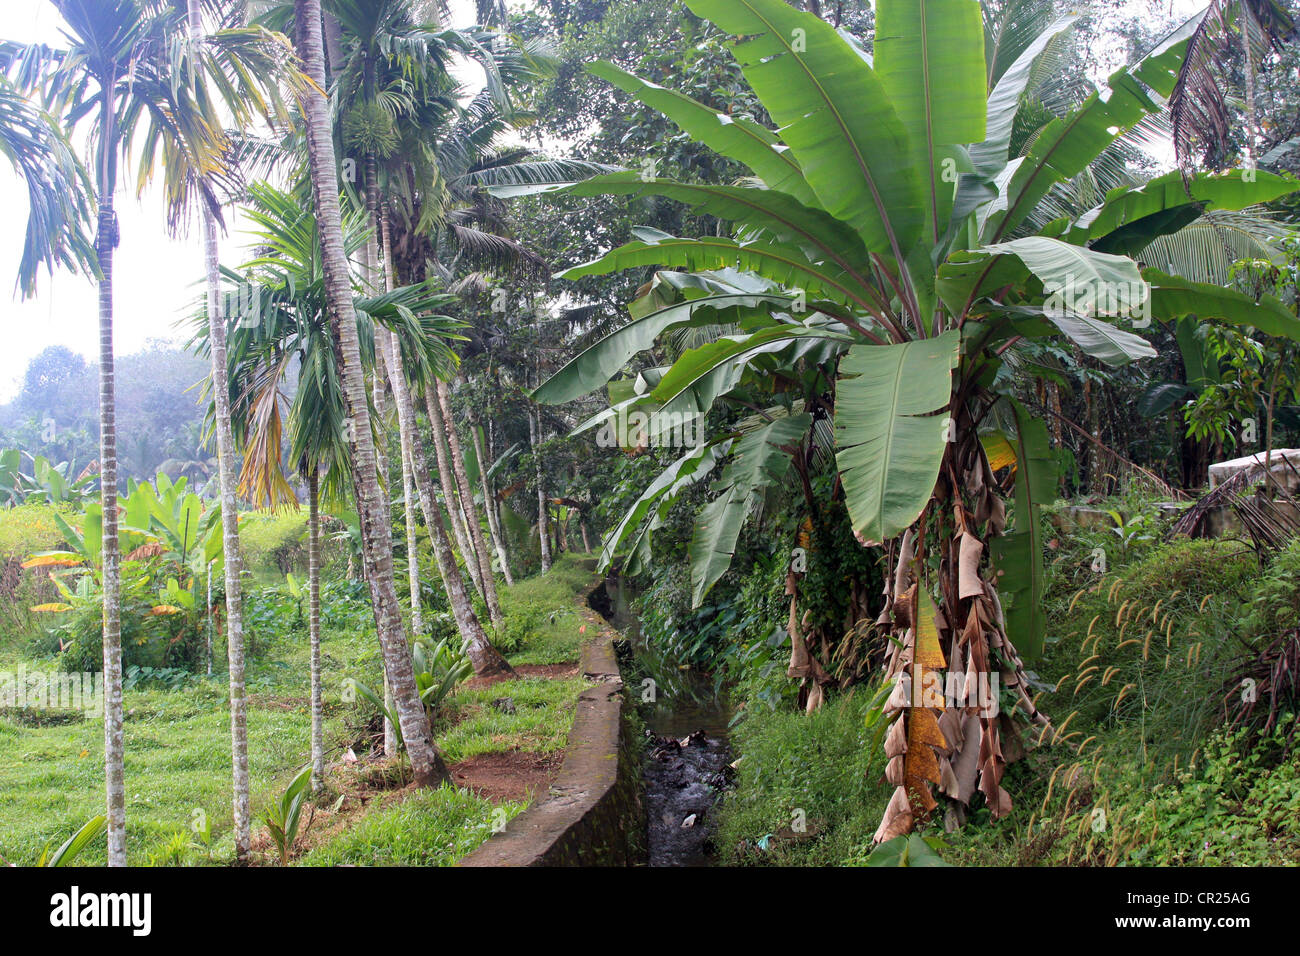 agriculture land Banana Arecanut tree, Betelnut tree in kerala, India Stock Photo